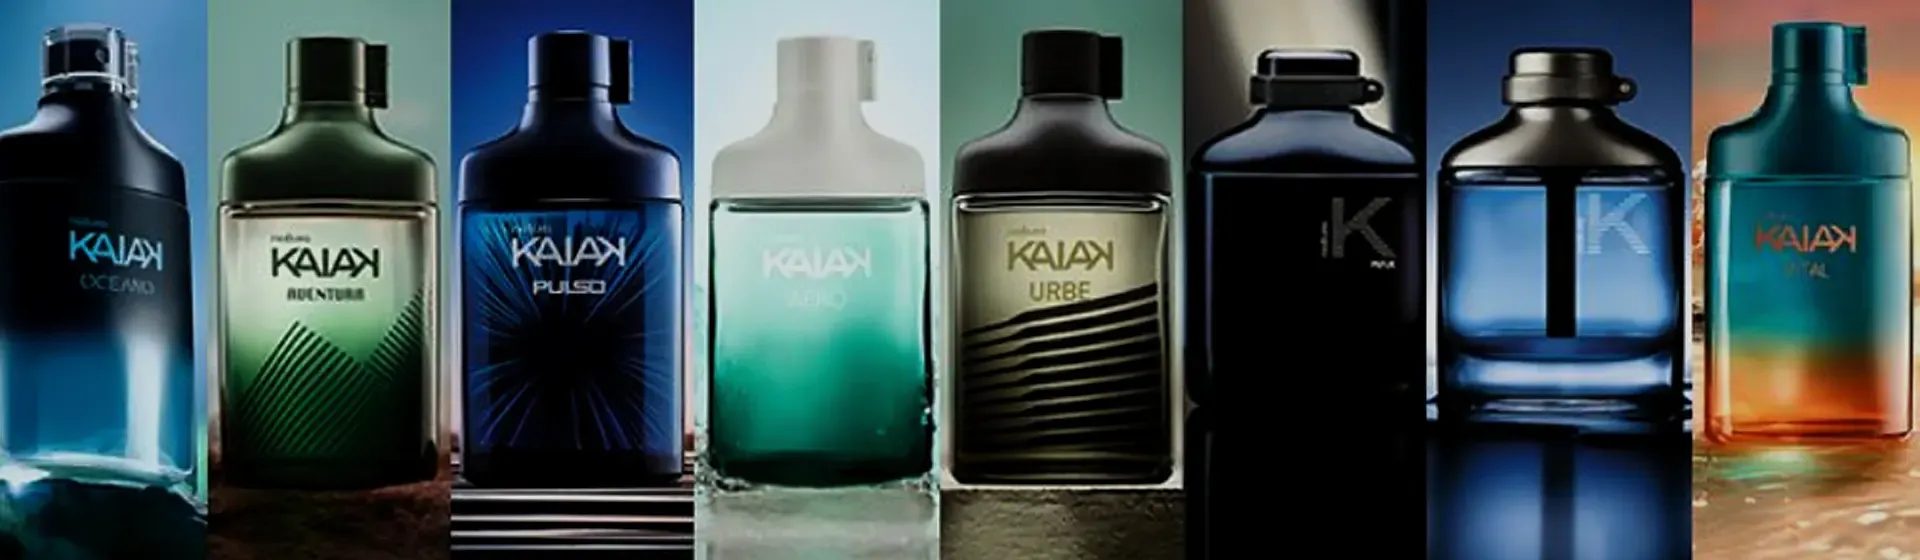 Kaiak Perfume: 6 melhores opções de fragrâncias masculinas da linha